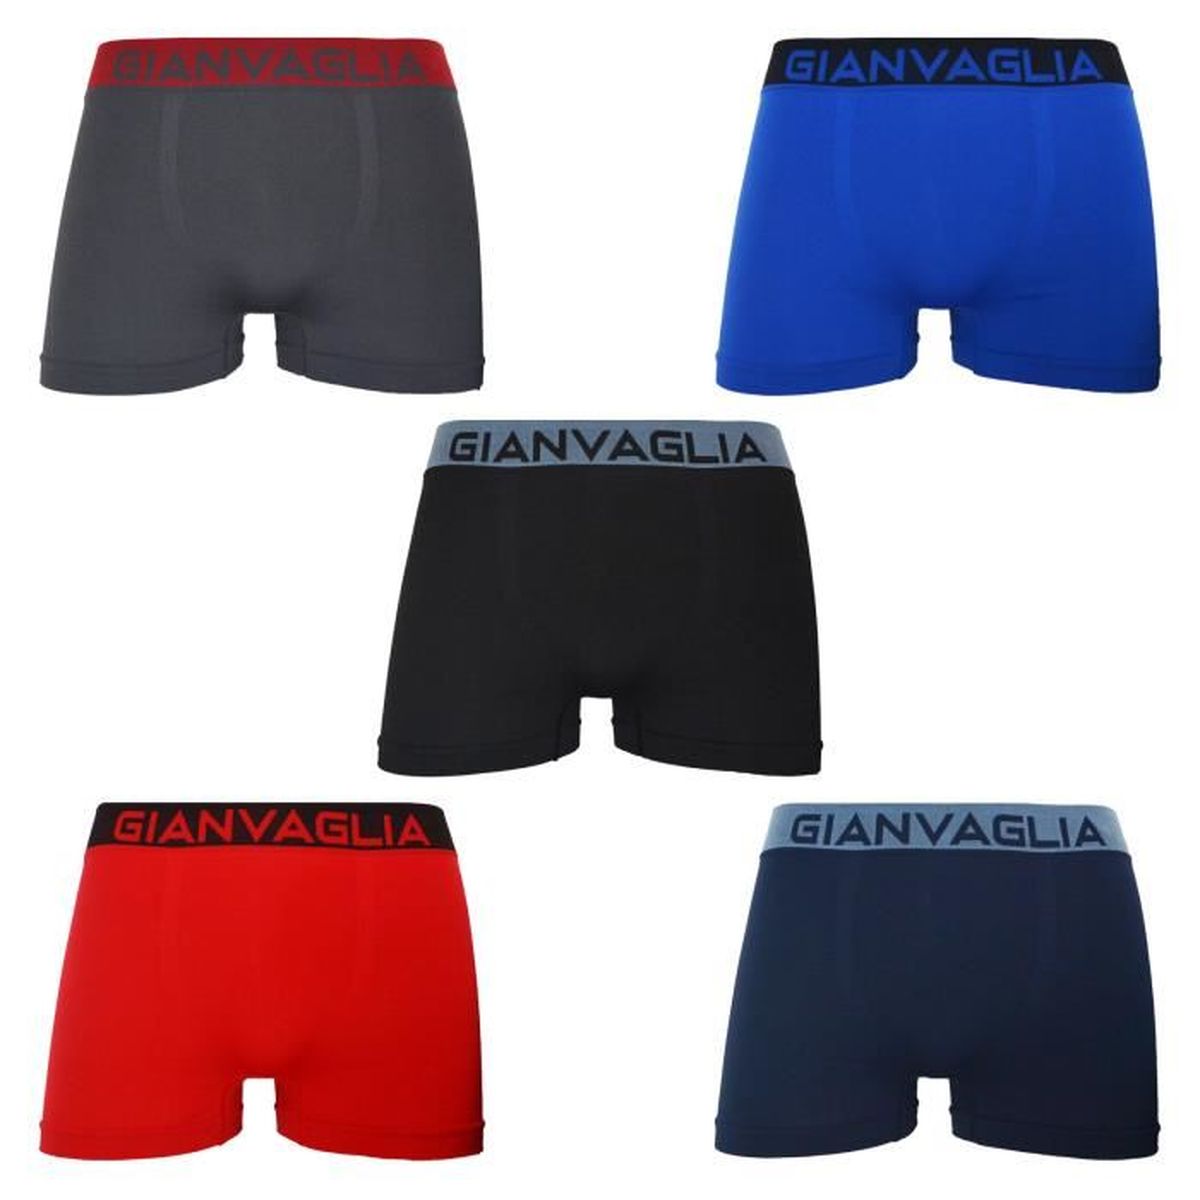 ROYALZ Boxer Homme Lot de 5 Ensemble sous-vêtements Shorts Classiques sans Couture pour Les Sports et Les Loisirs 95% Coton / 5% Elasthanne 5 Paires